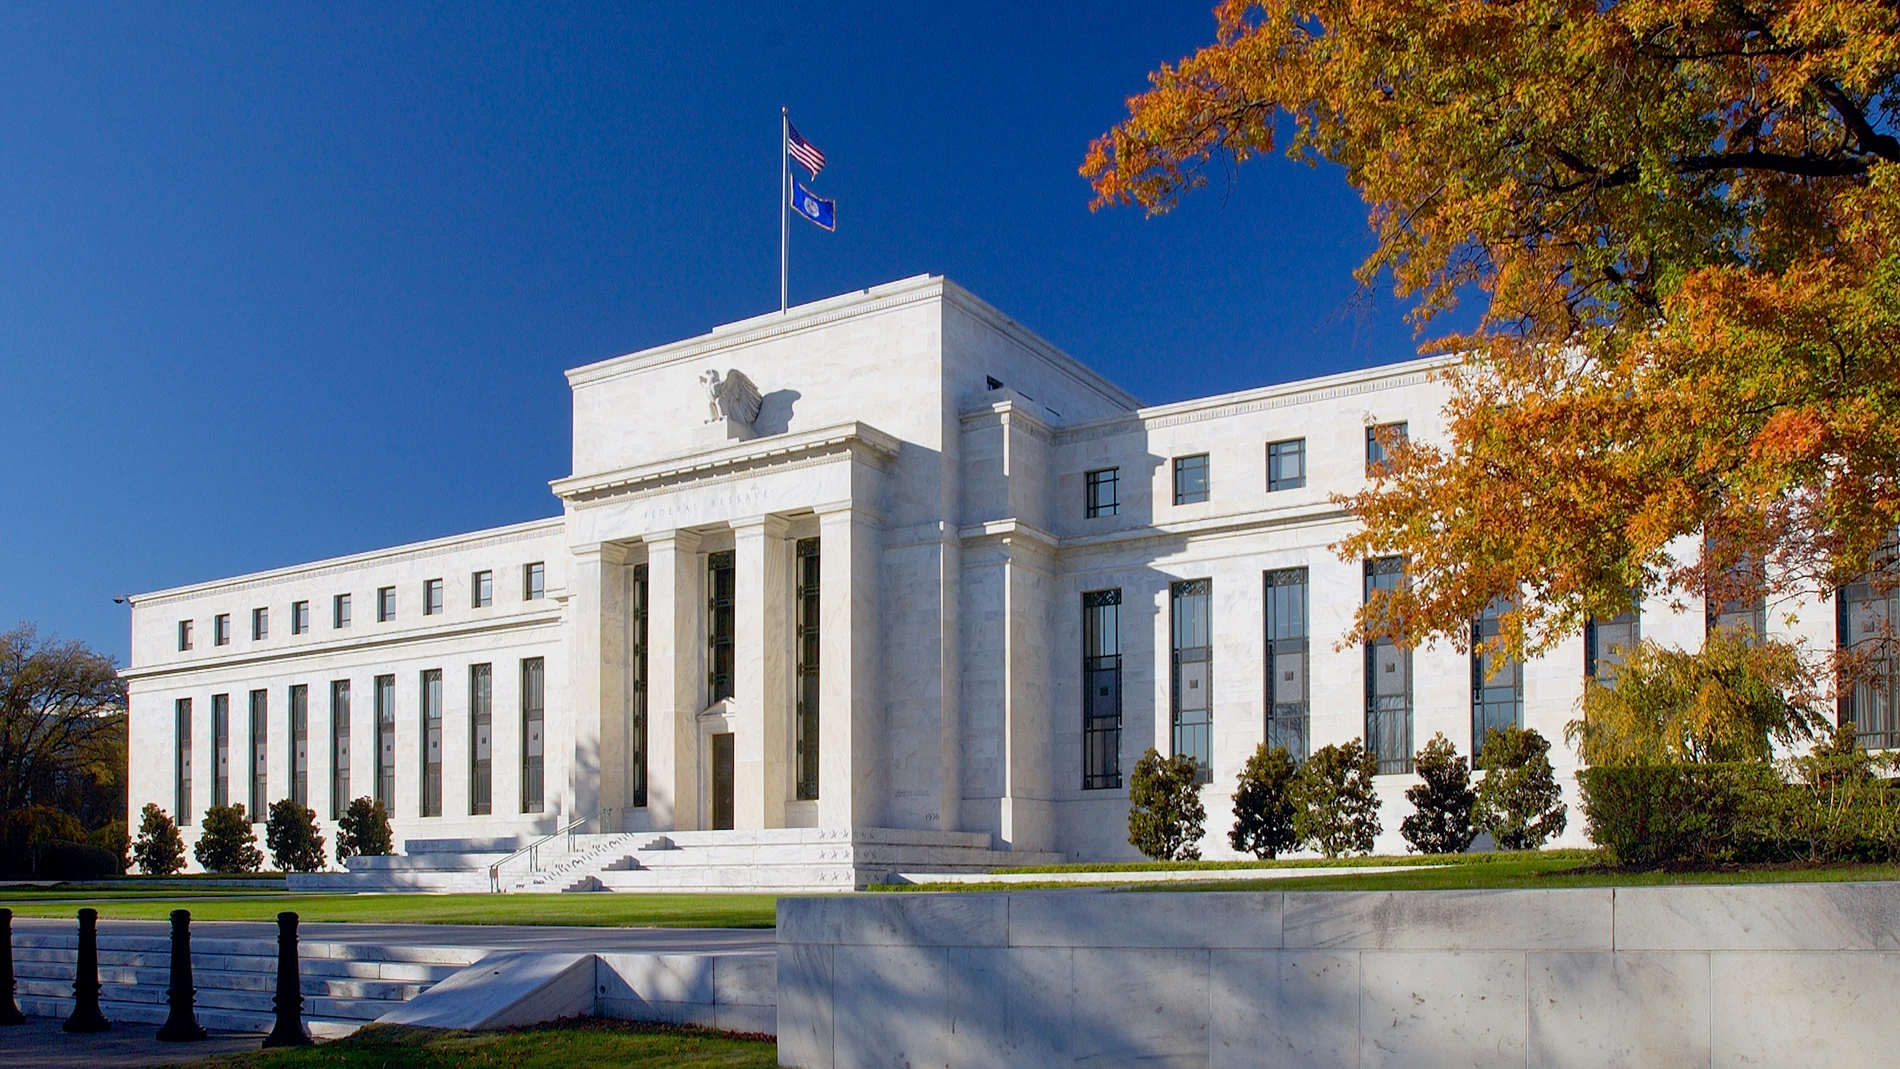 Economía/Finanzas.- Los créditos de emergencia de la Reserva Federal a los bancos caen tras la compra del First Republic